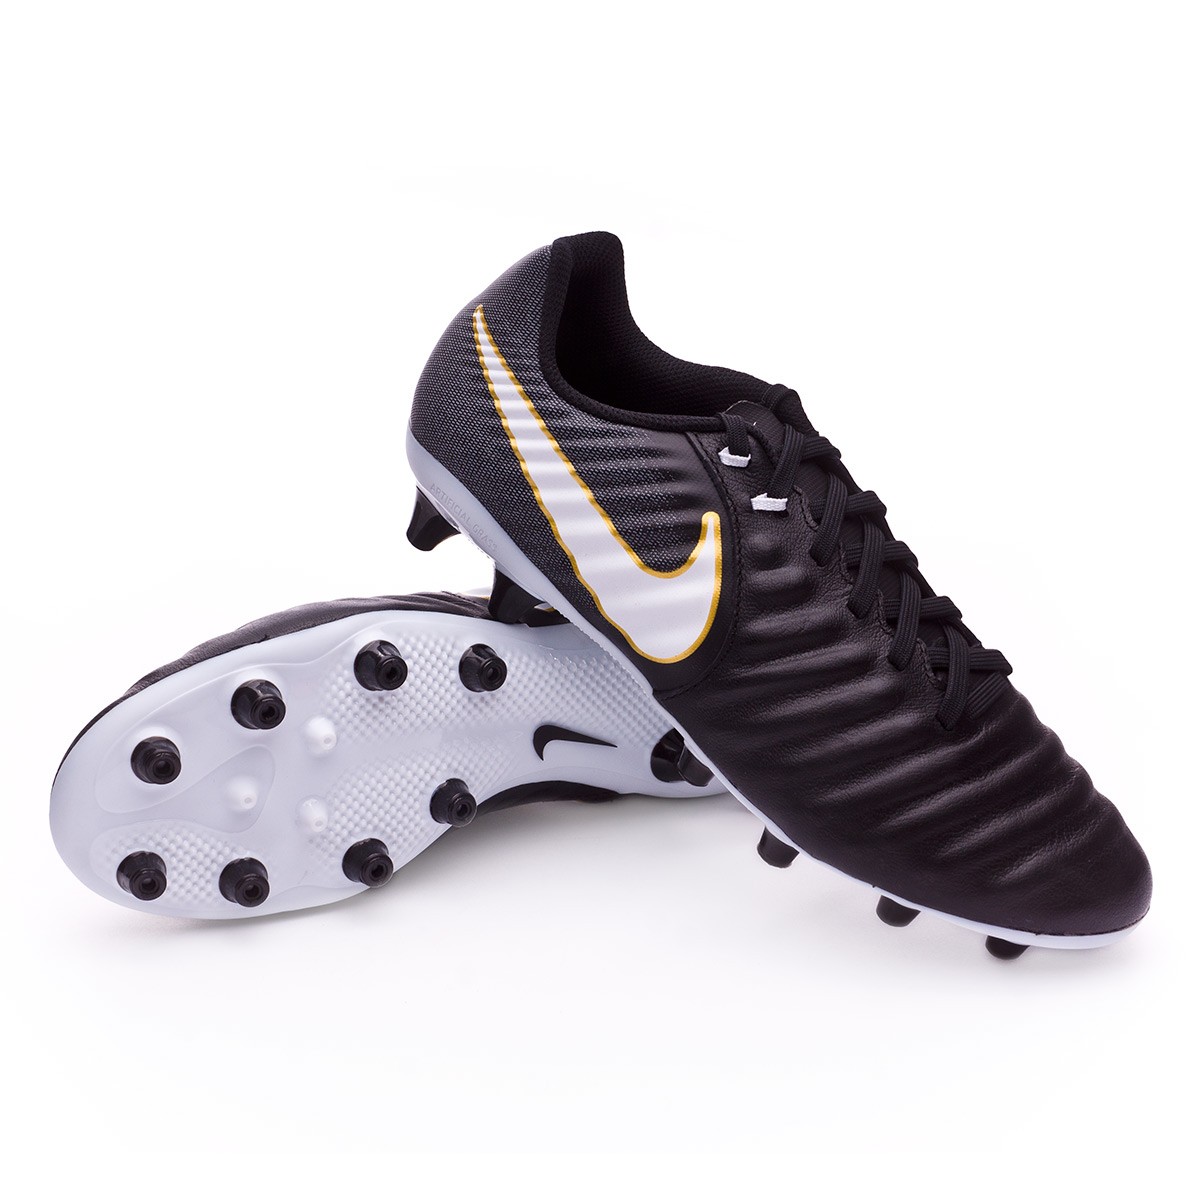 Bota de fútbol Nike Tiempo Ligera IV AG-Pro Black-White - Tienda de fútbol  Fútbol Emotion